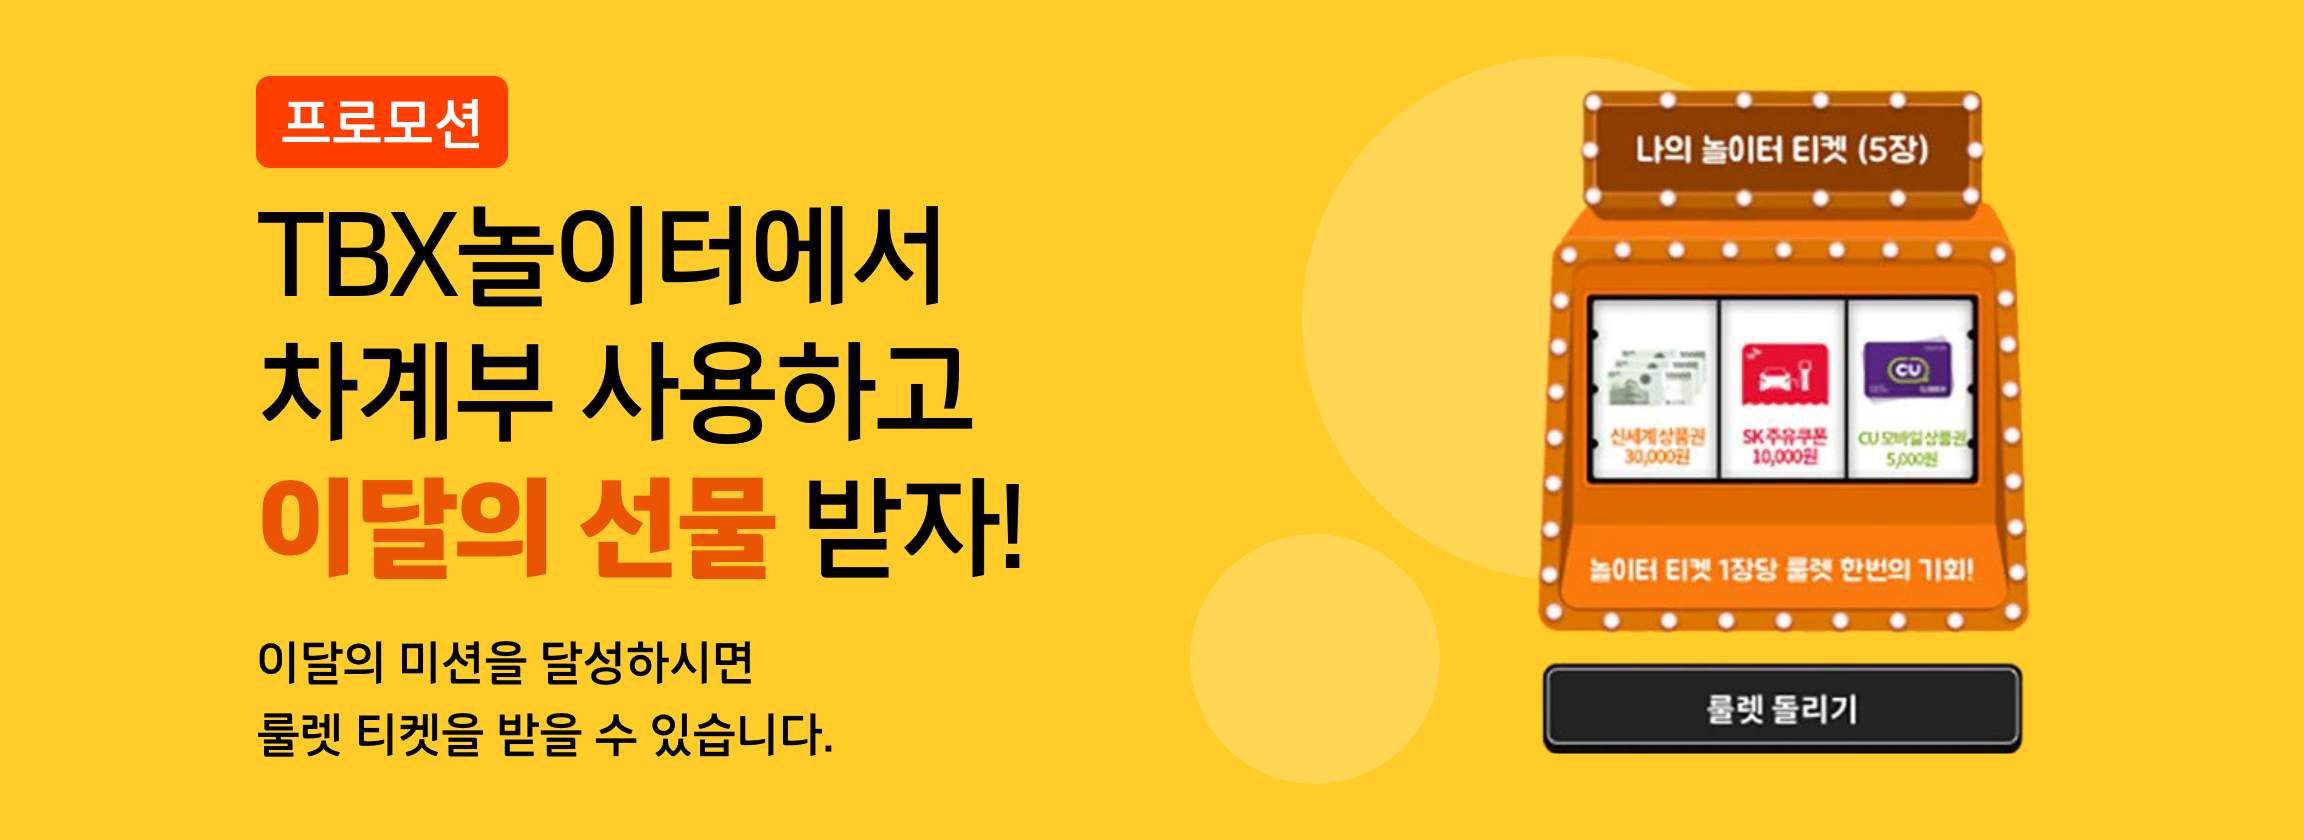 한국타이어, TBX 멤버십 앱에서 쉽게 차량 관리하는 ‘차계부’ 서비스 론칭